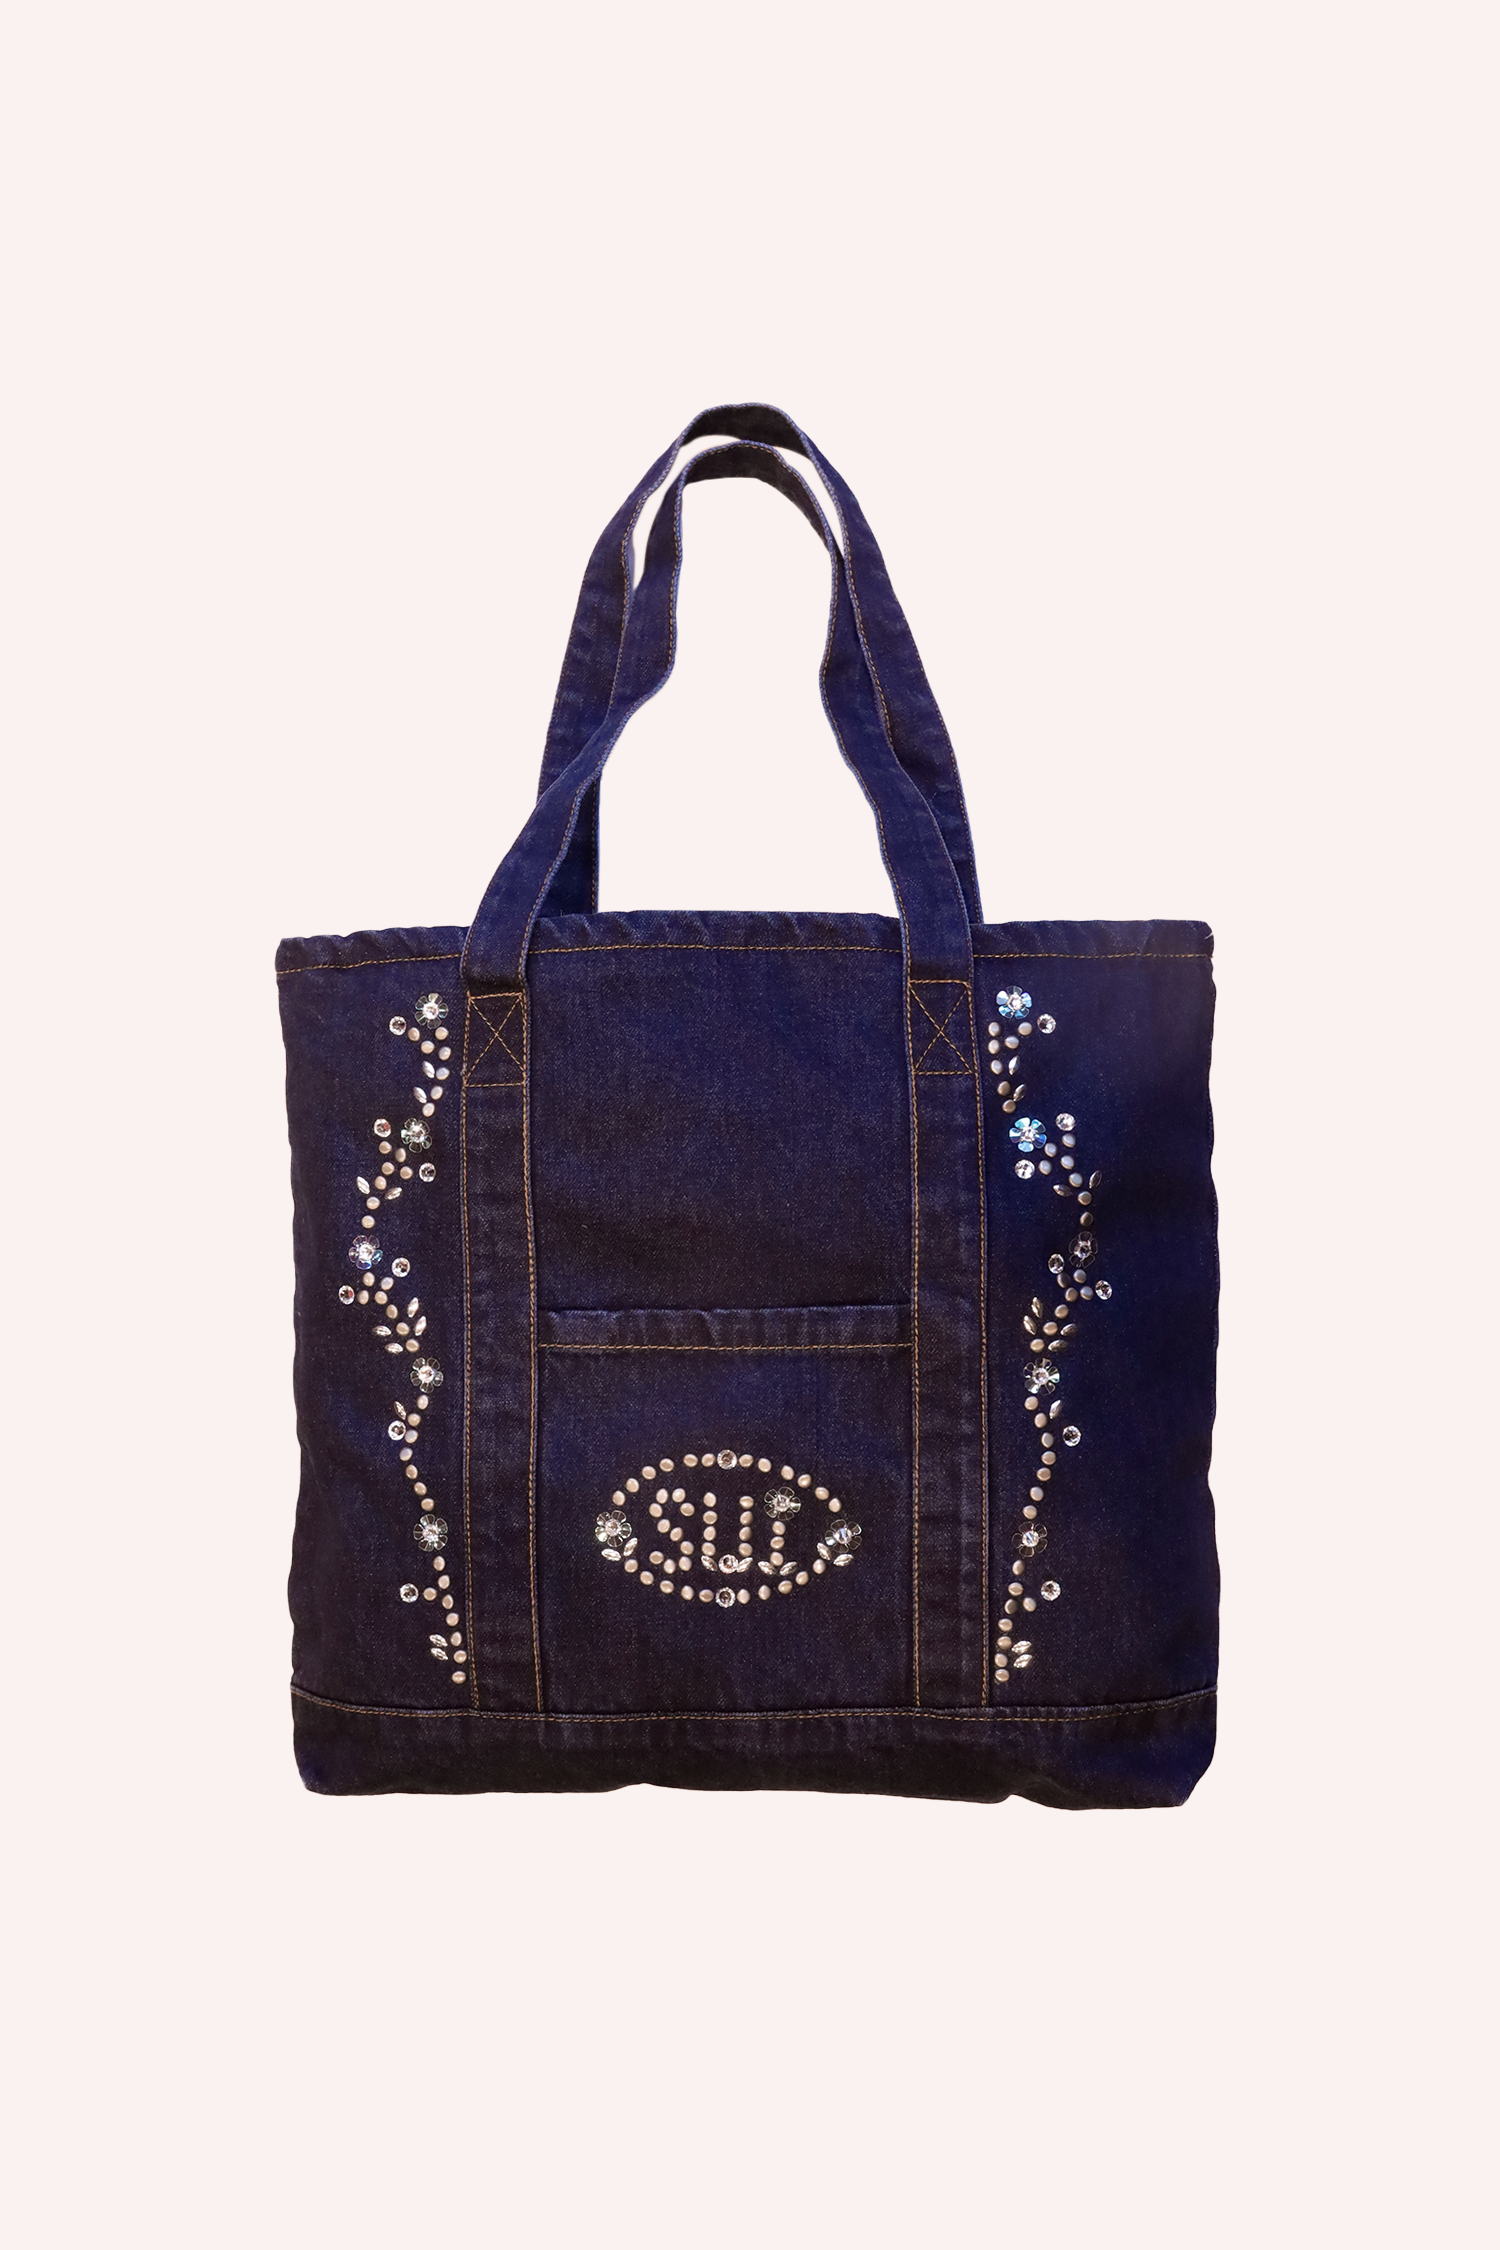 Denim Tote Bag, Studded logo, shiny floral design, U I with floral bottom, I with a floral dot